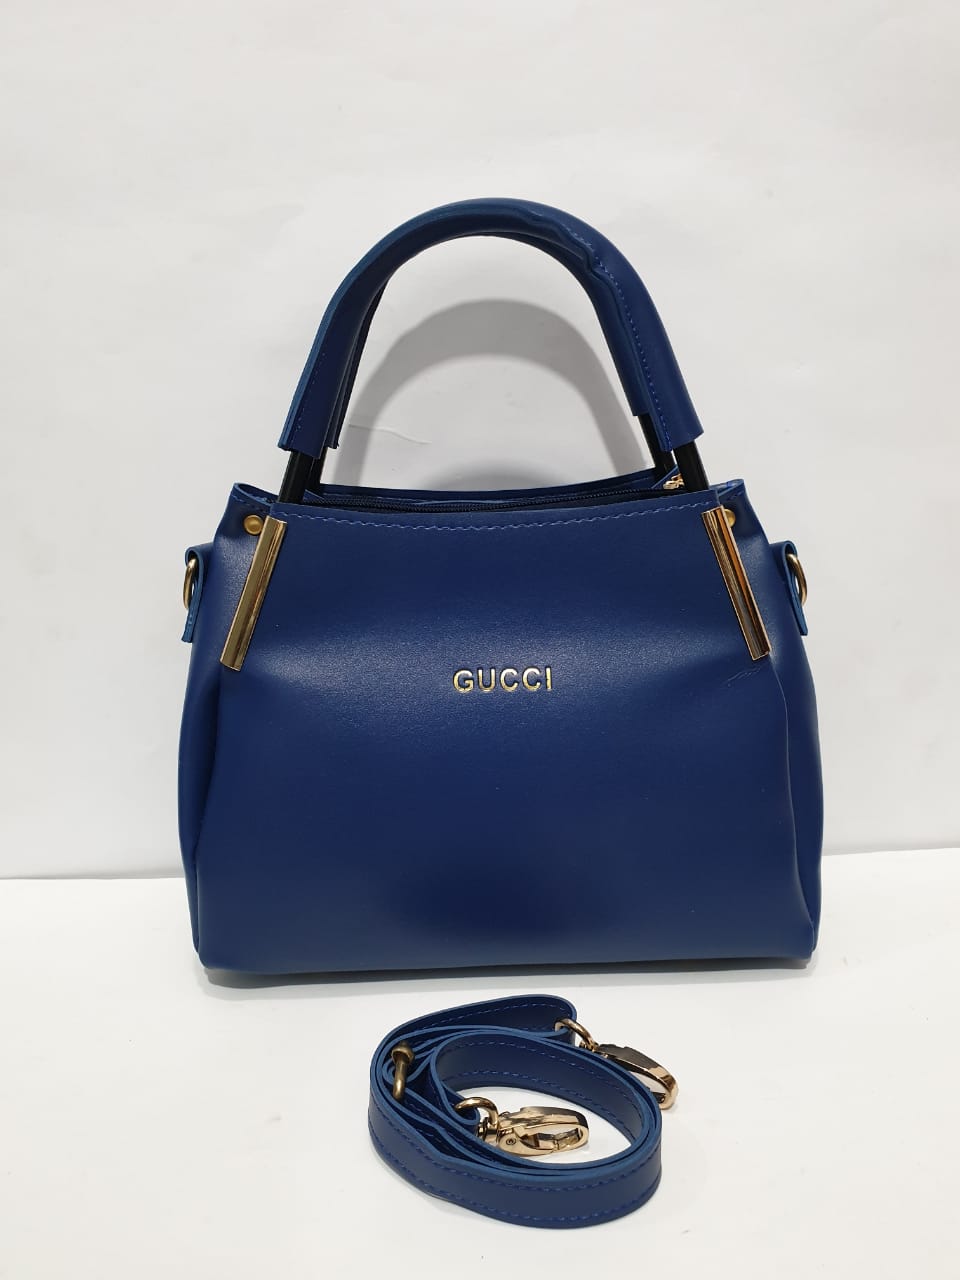 EMLOVEX Ladies handbags – BEIGE 2